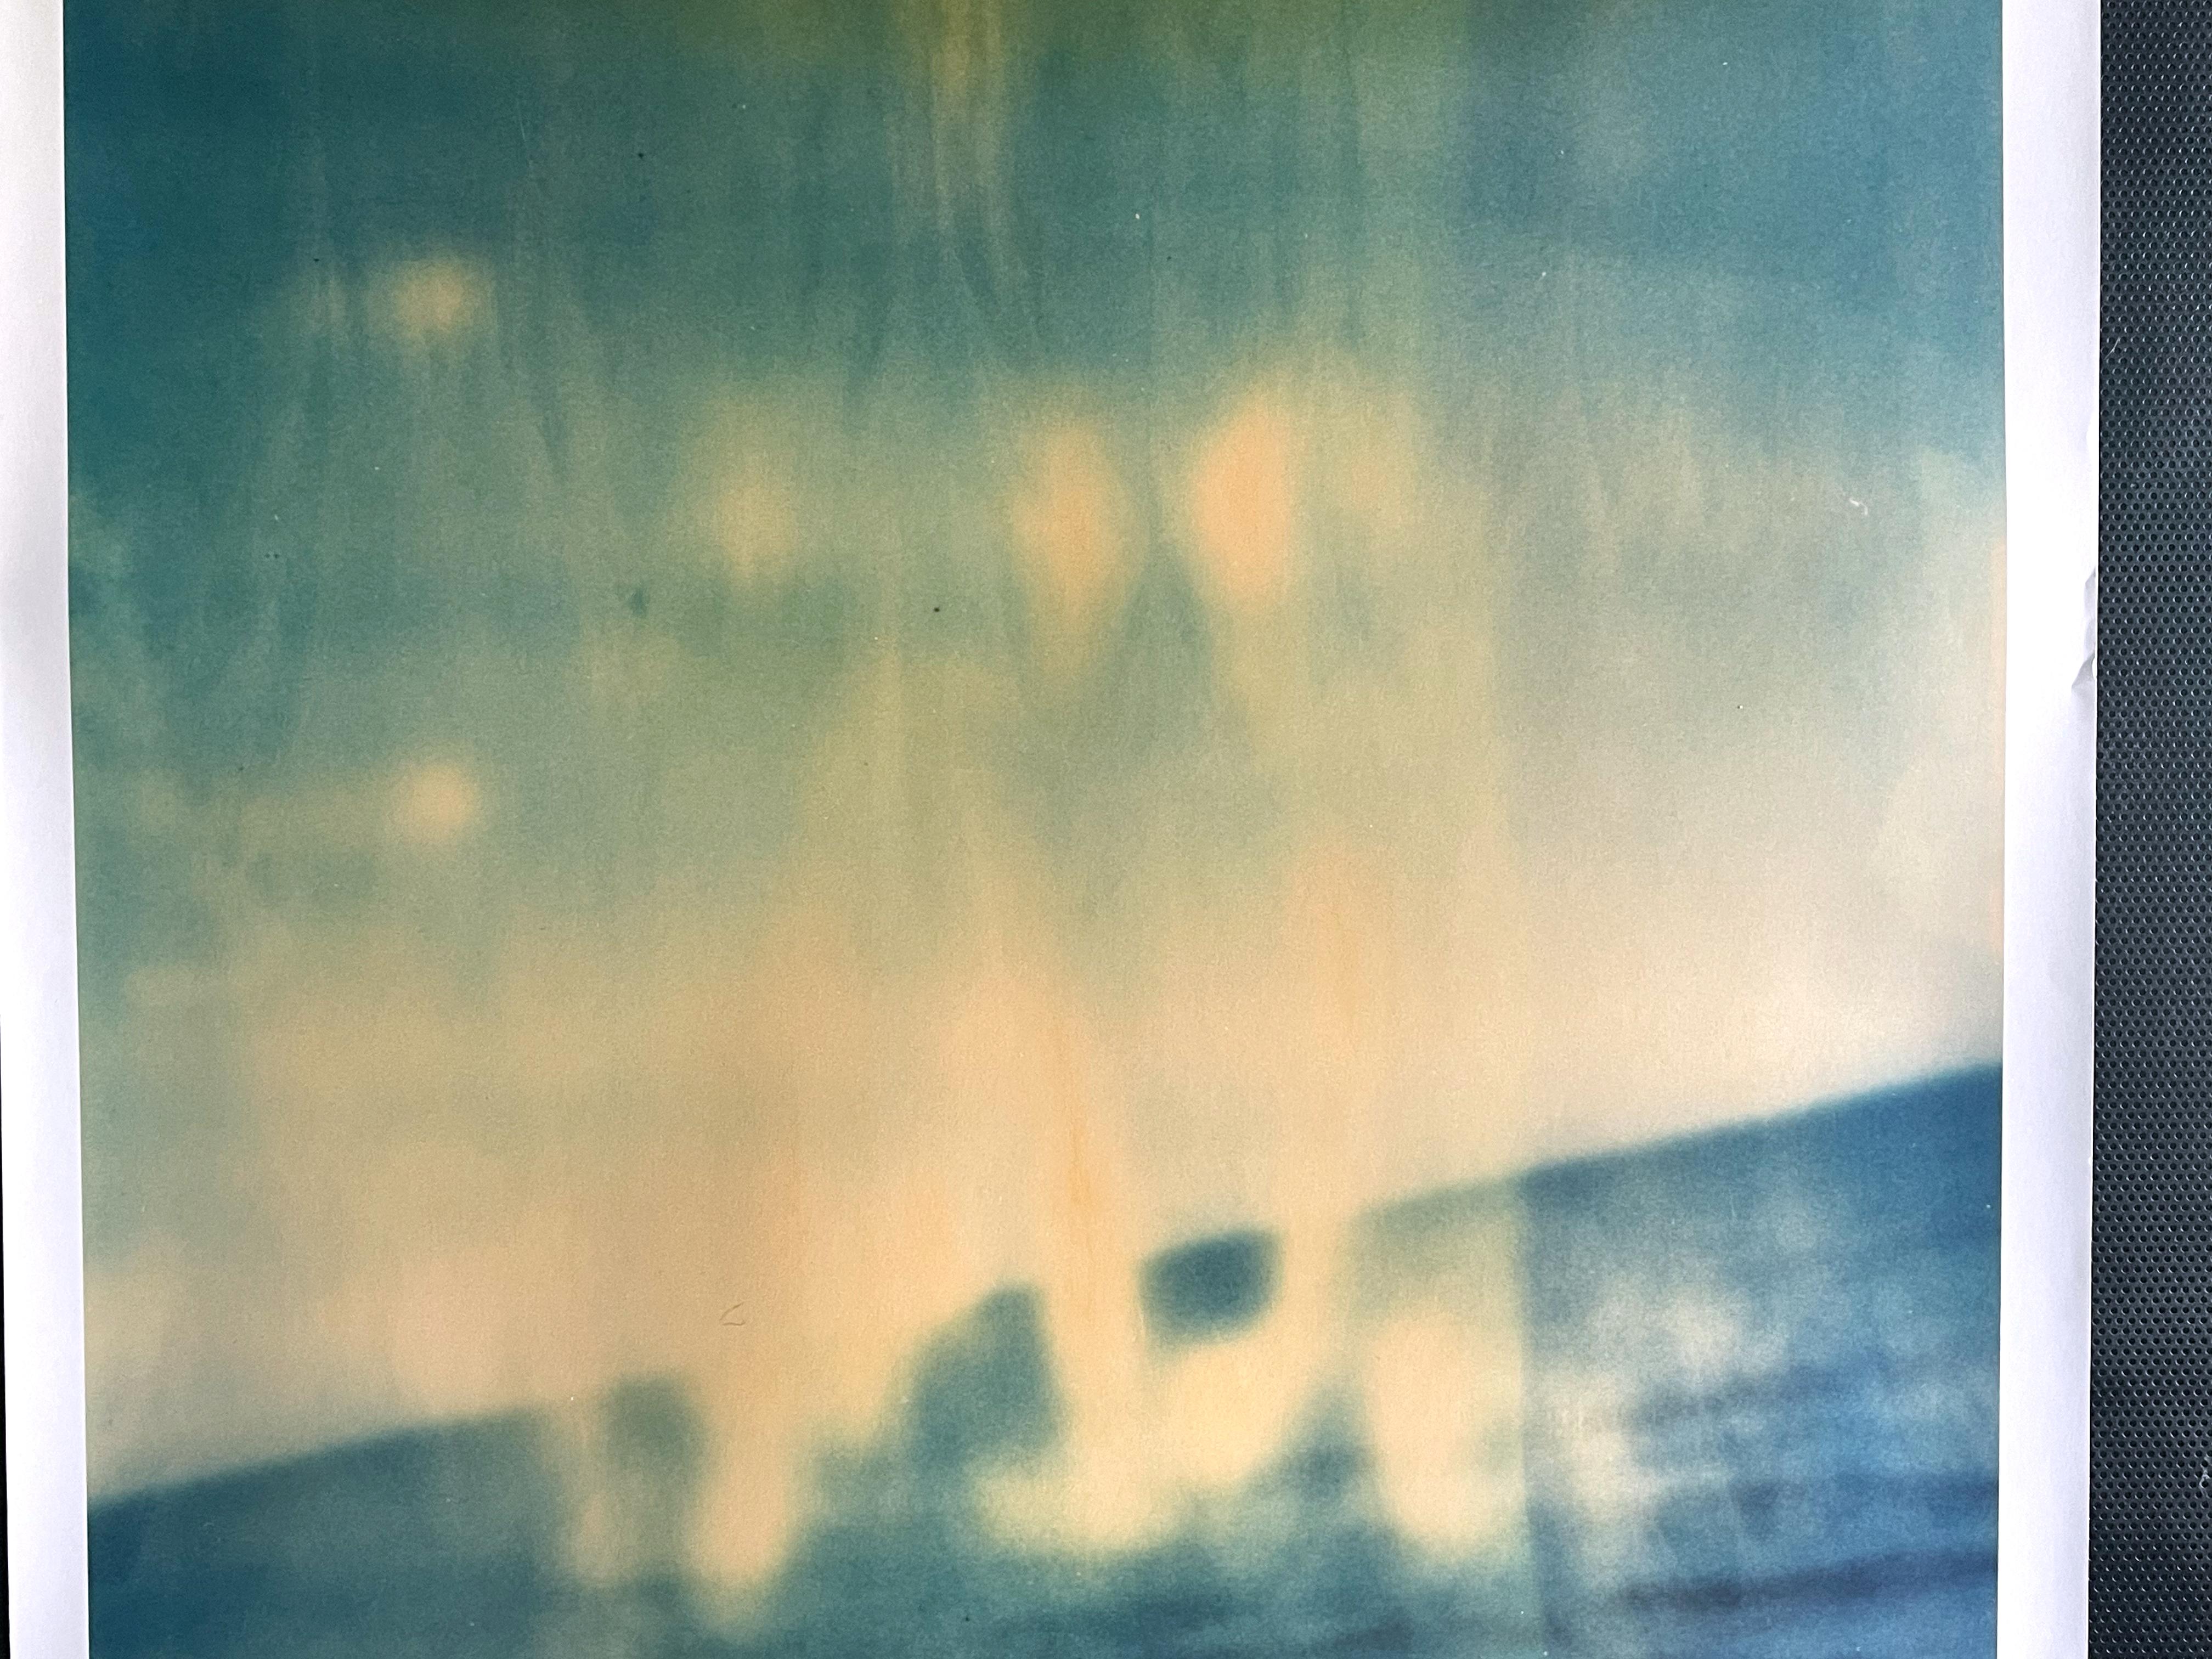 Tilted (Zuma Beach) - Fotografie, Polaroid, Contemporary, Malibu. 21. Jahrhundert – Photograph von Stefanie Schneider